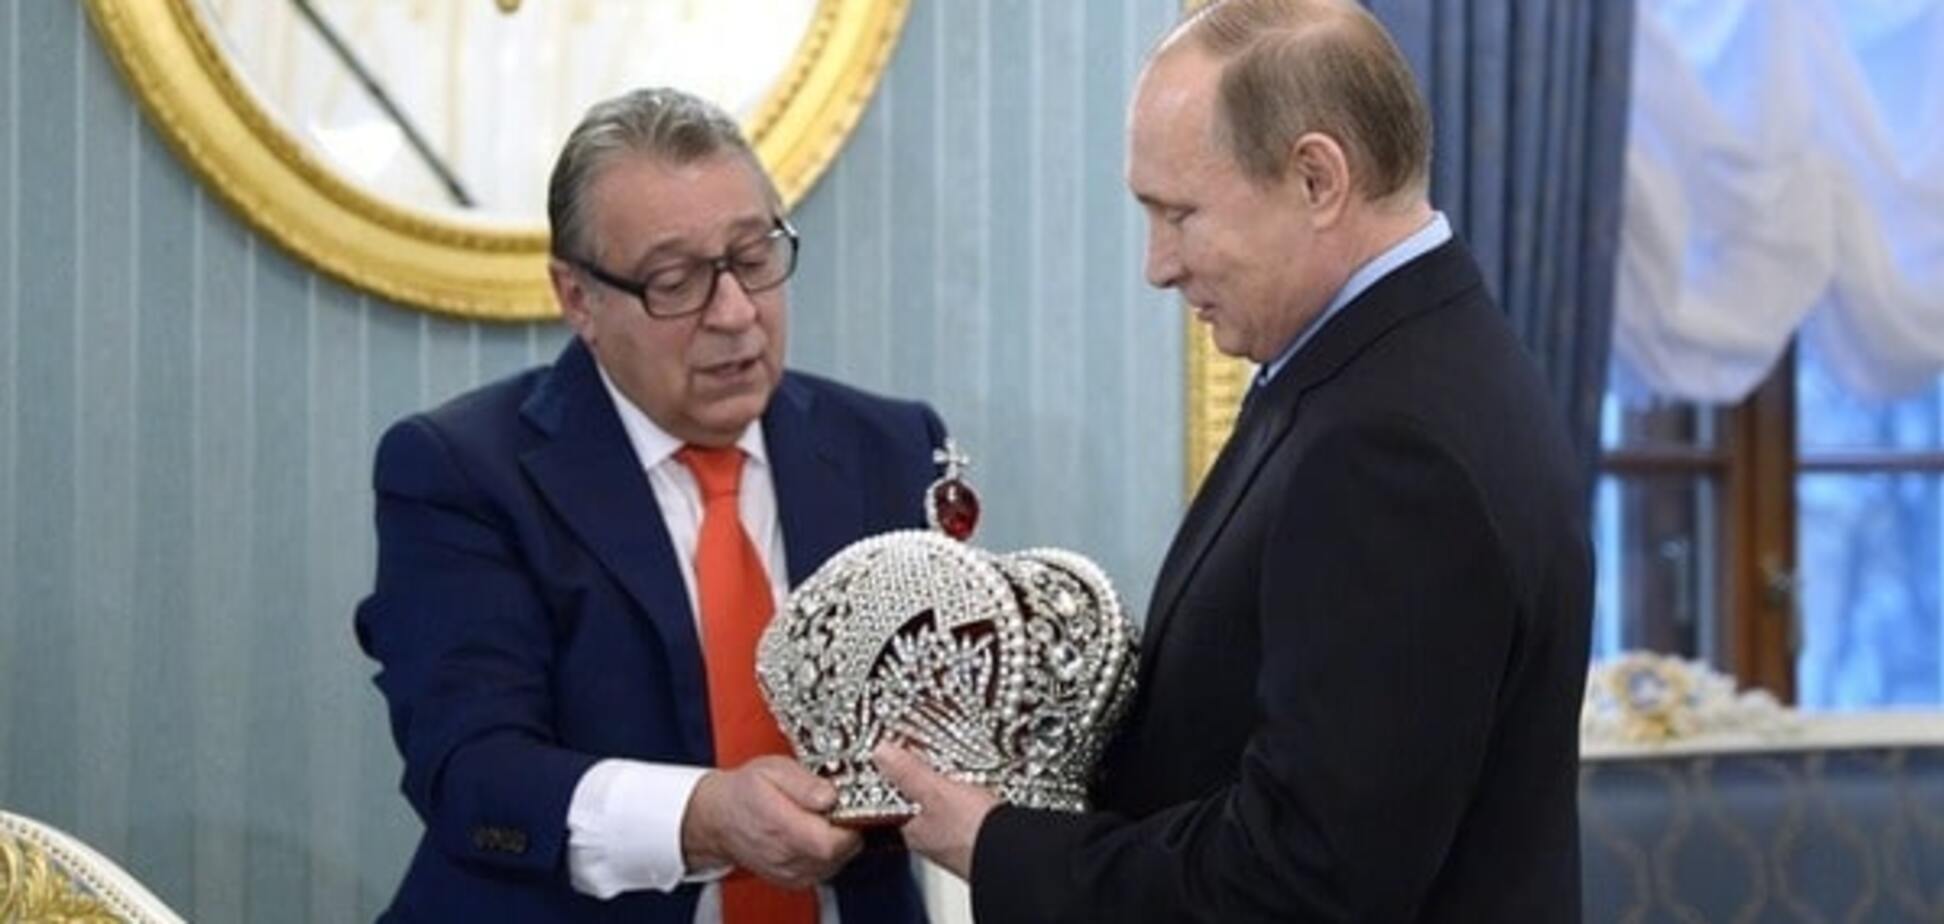 'Смешной холуяж': Невзоров прокомментировал 'коронацию' Путина